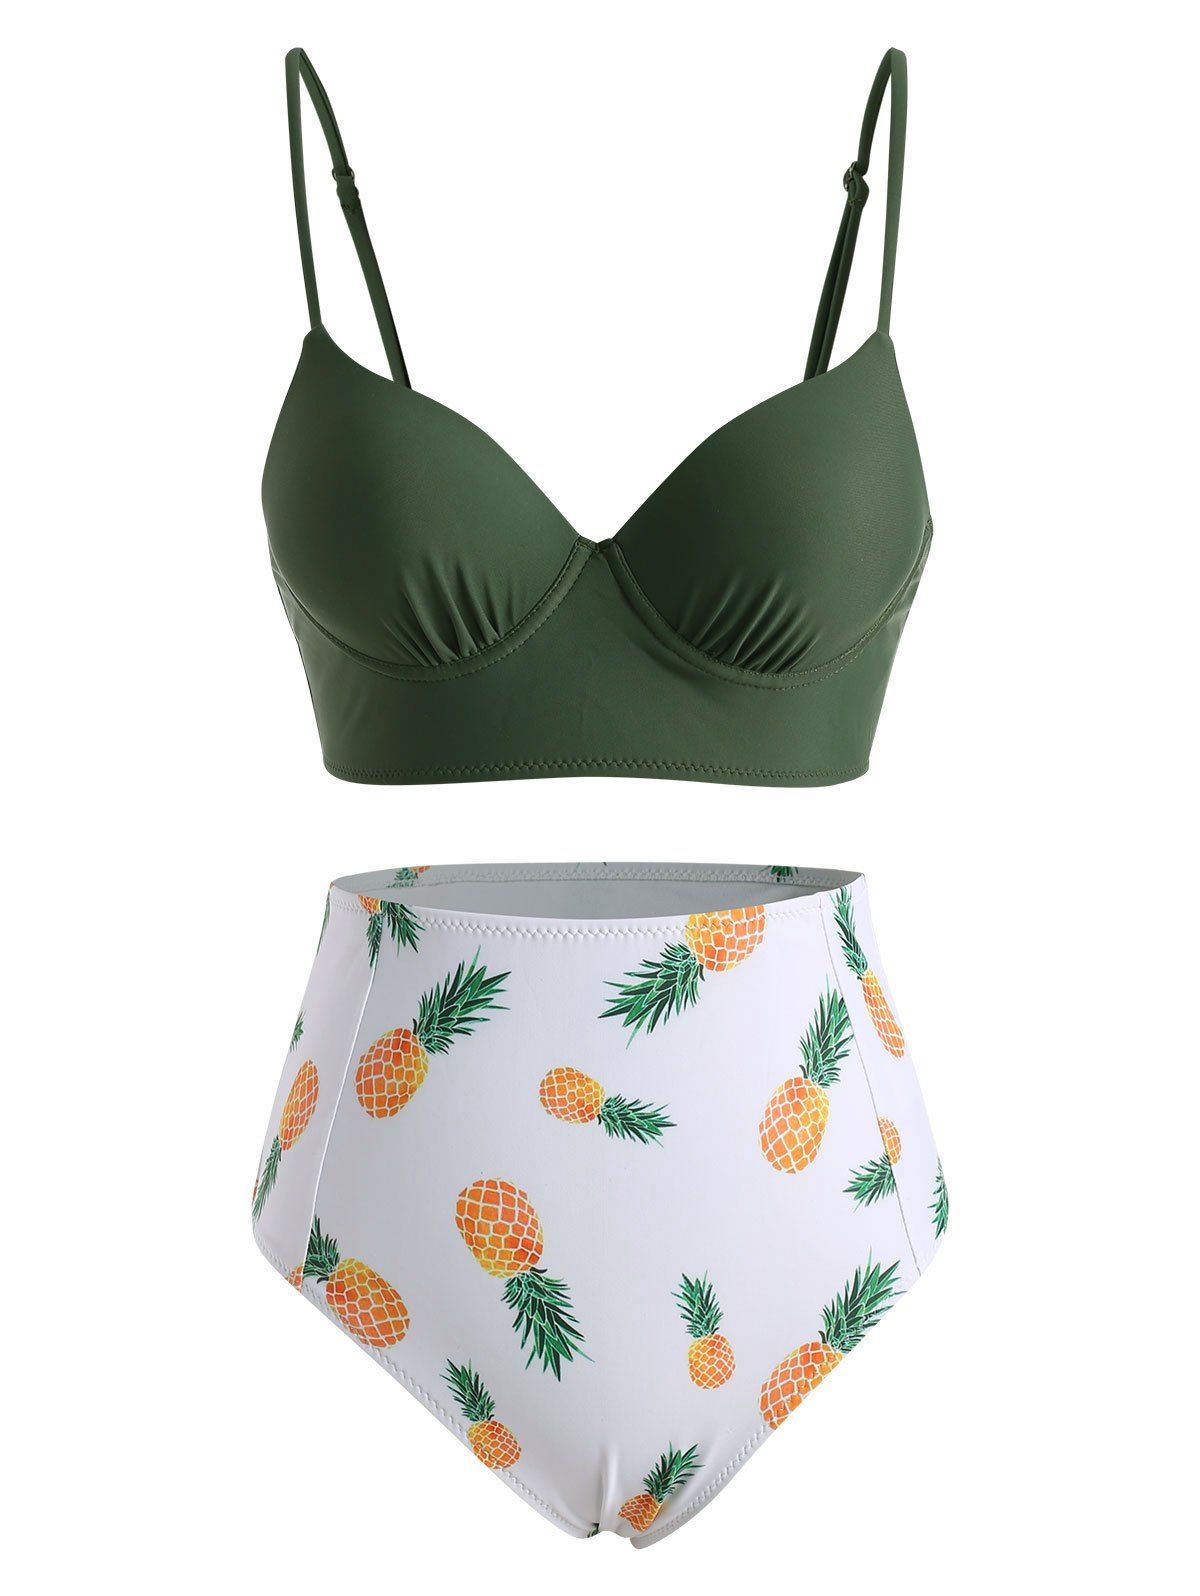 Maillot de Bain Bikini Moulant Gainant à Imprimé Ananas à Taille Haute - Vert profond S